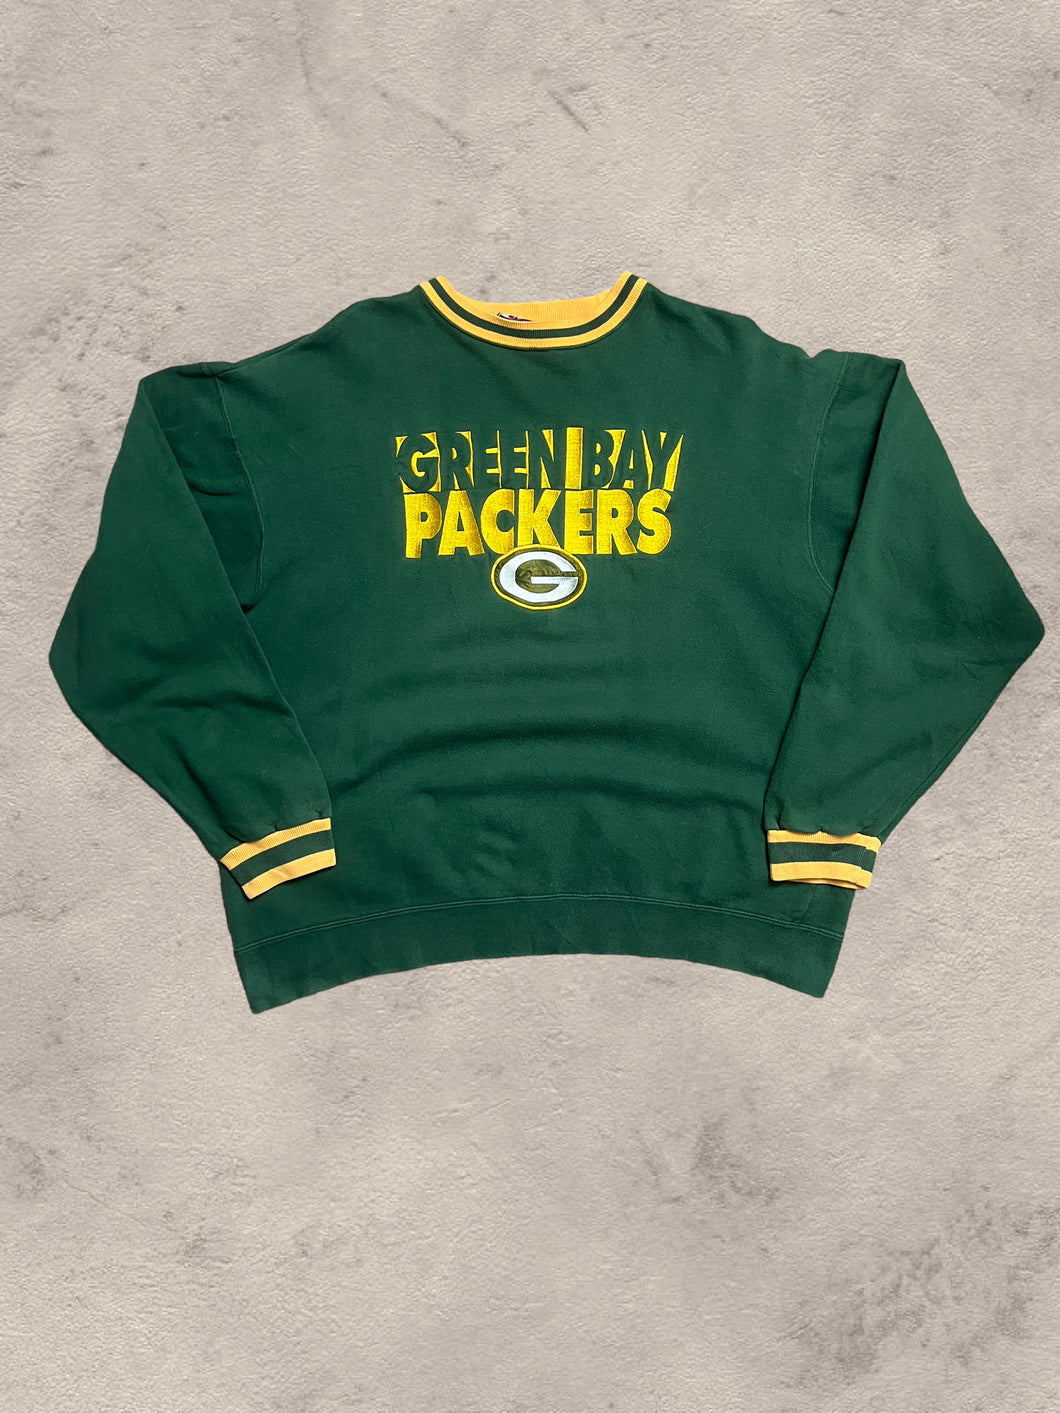 Vintage Green Bay Packers Sweatshirt - XL